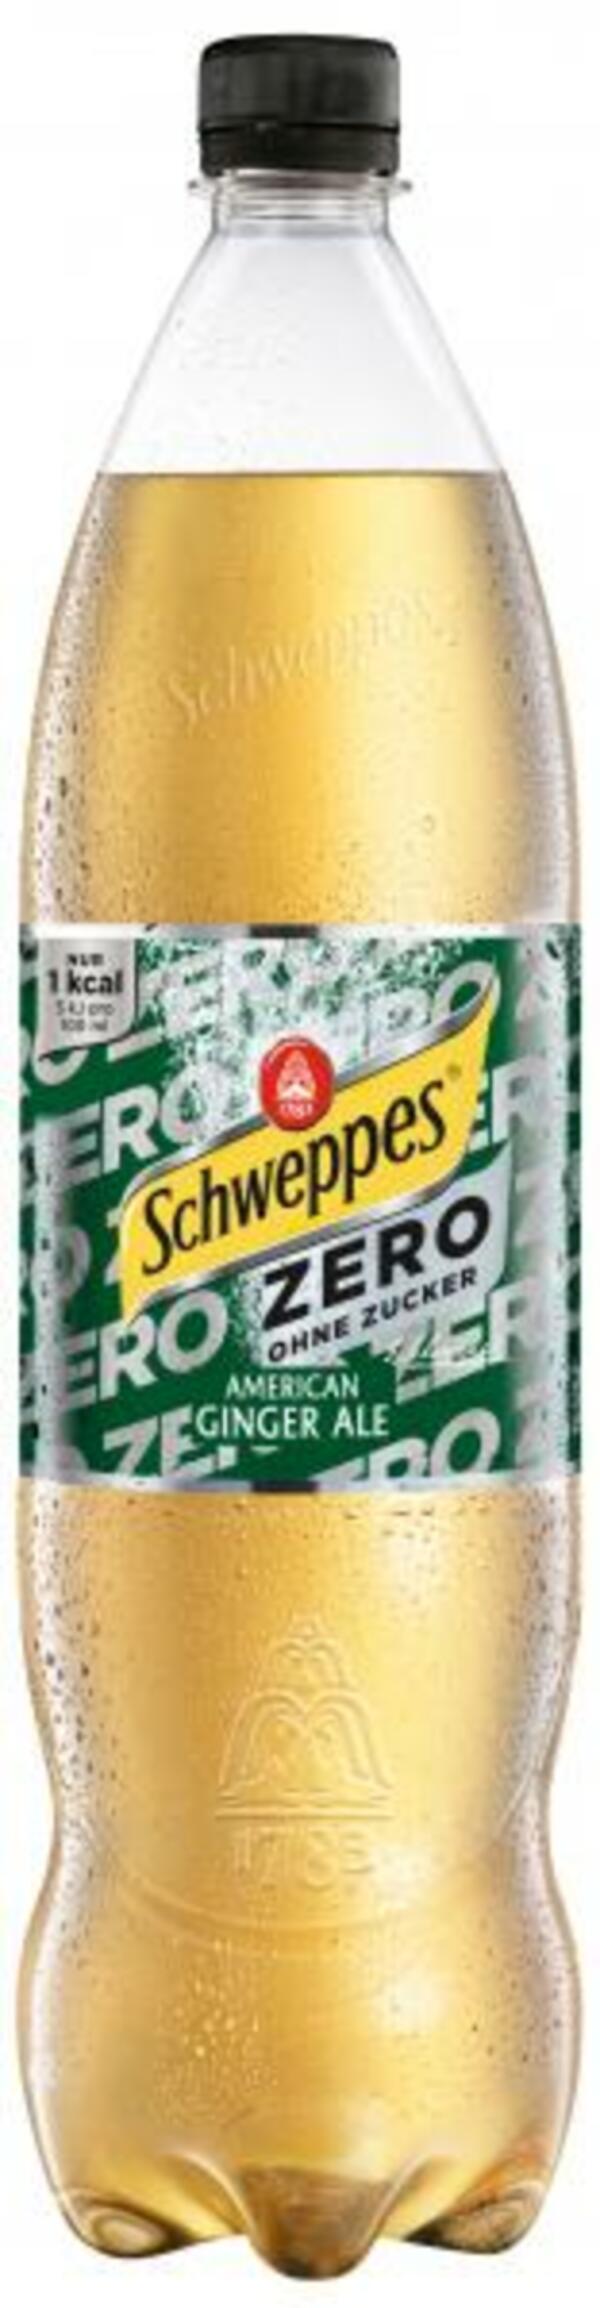 Bild 1 von Schweppes American Ginger Ale Zero (Einweg)